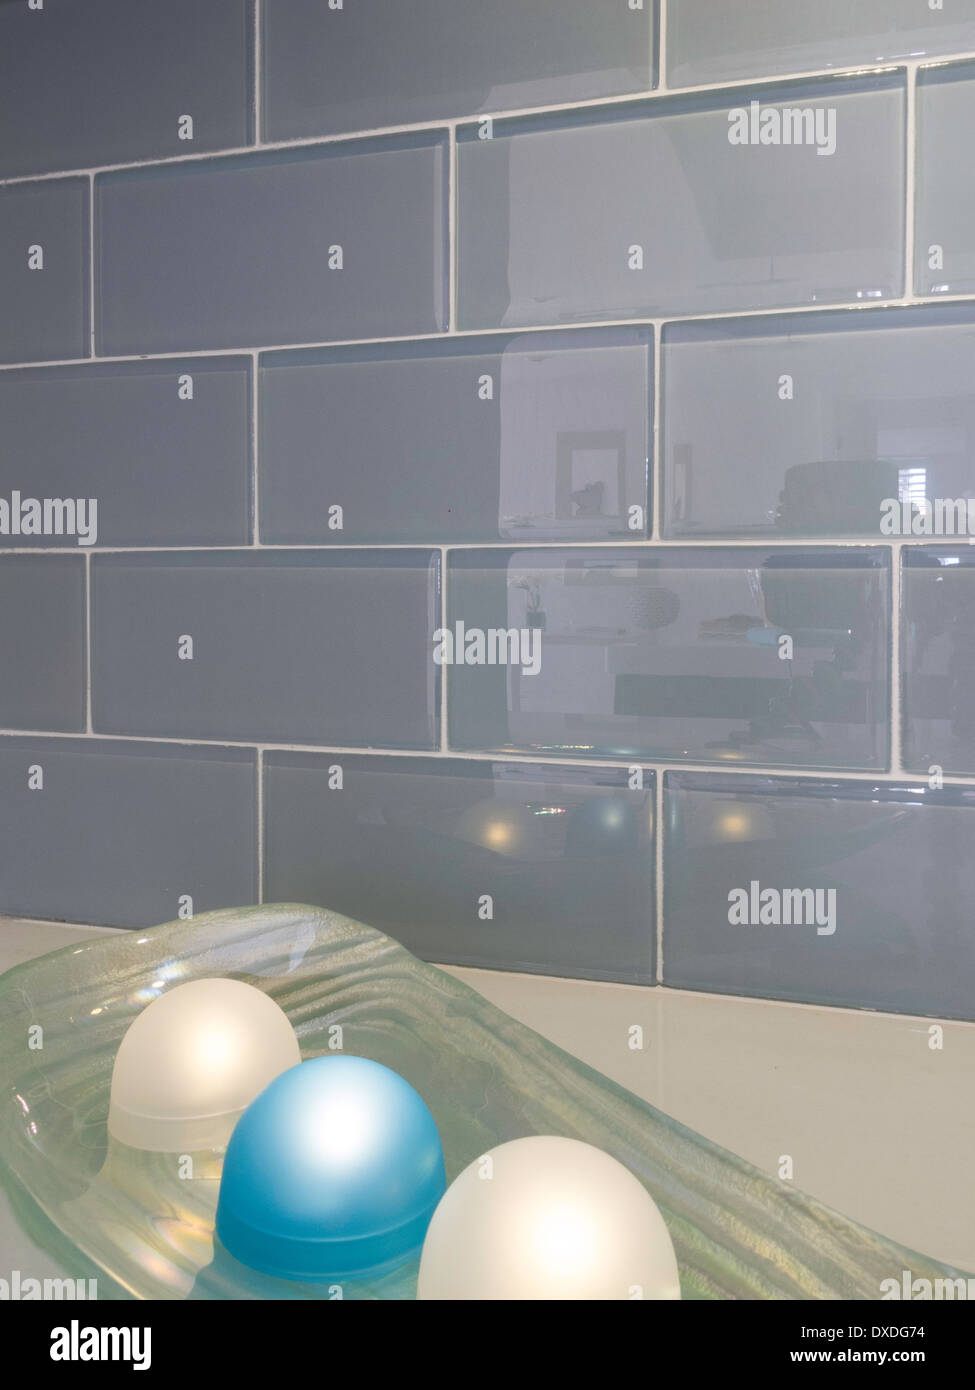 Bunte dekorative Glas Leuchten neben Glas Fliesen-Wand, Wohn-Interieur, USA Stockfoto